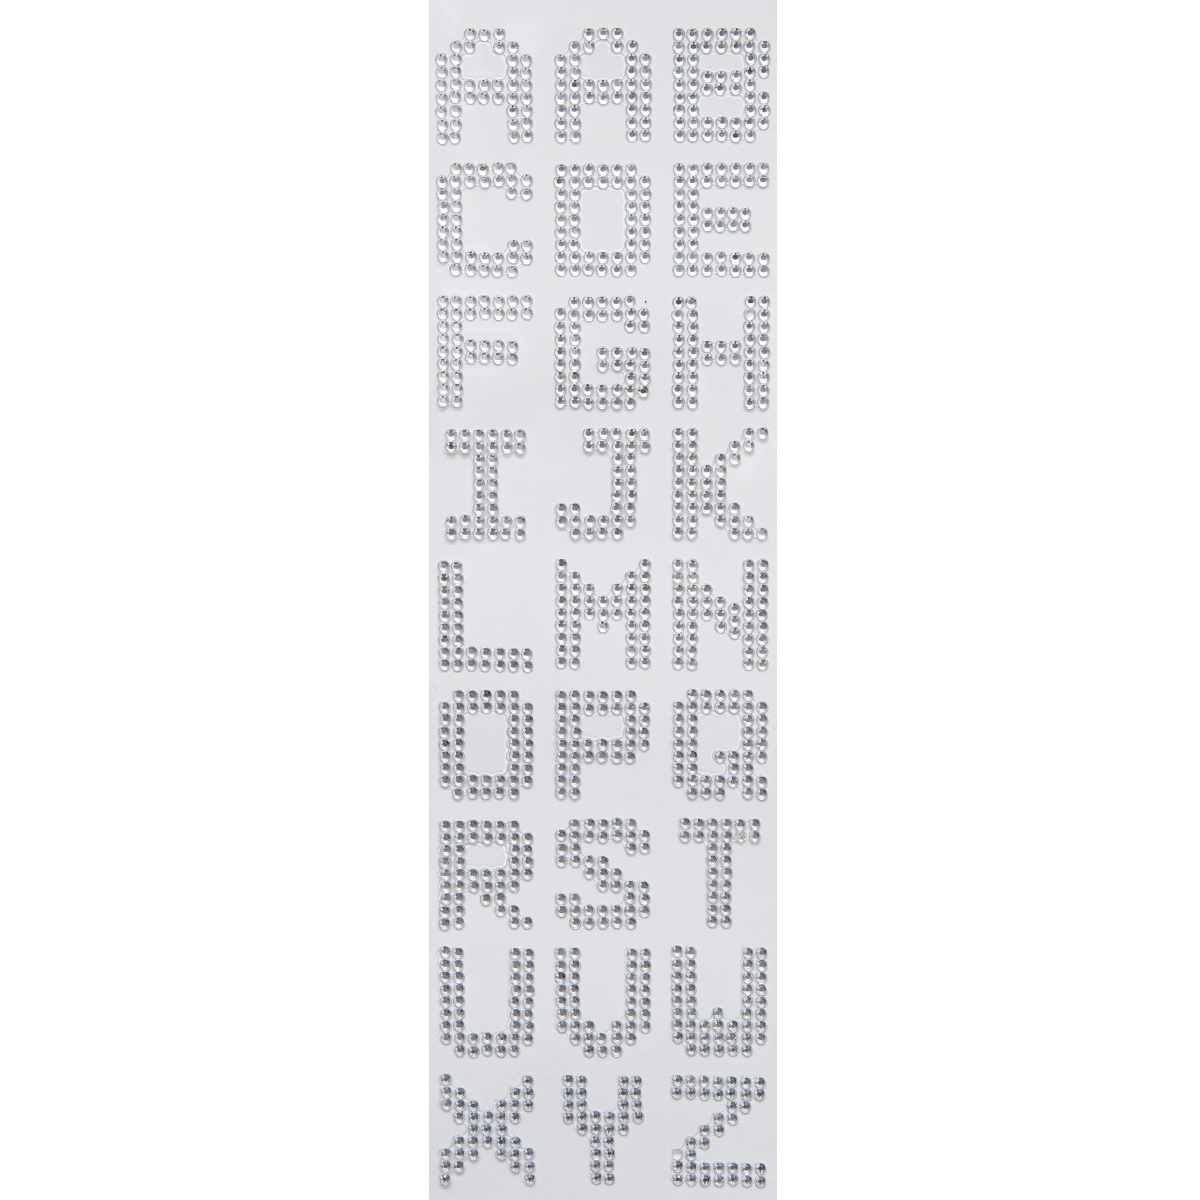  стразы наклейка алфавит стикер бисер украшение наклейка смартфон PC планшет именная табличка запирающийся шкафчик RSS-62